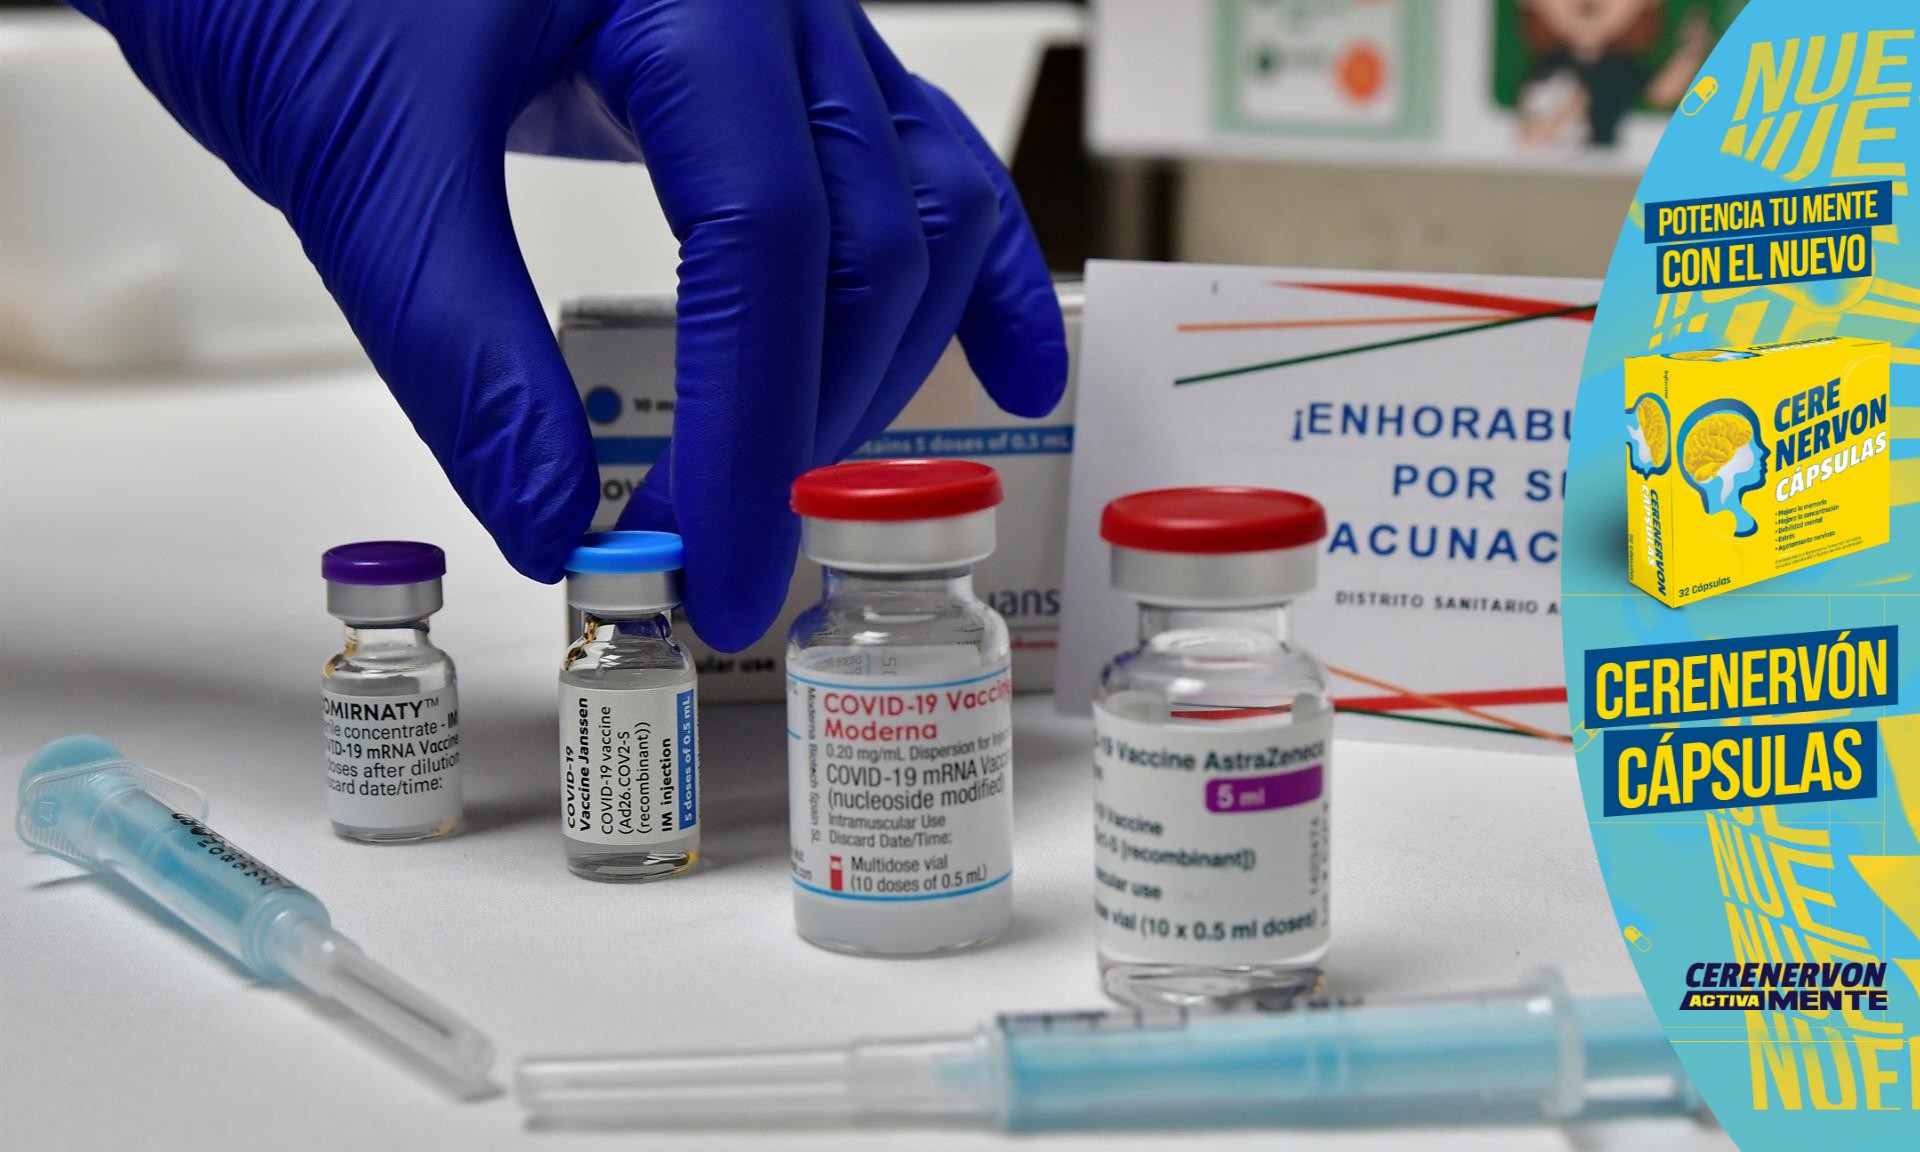 Abogado: El MP debe proceder contra las autoridades por "negligencia" en entrega de vacunas anticovid a los hondureños